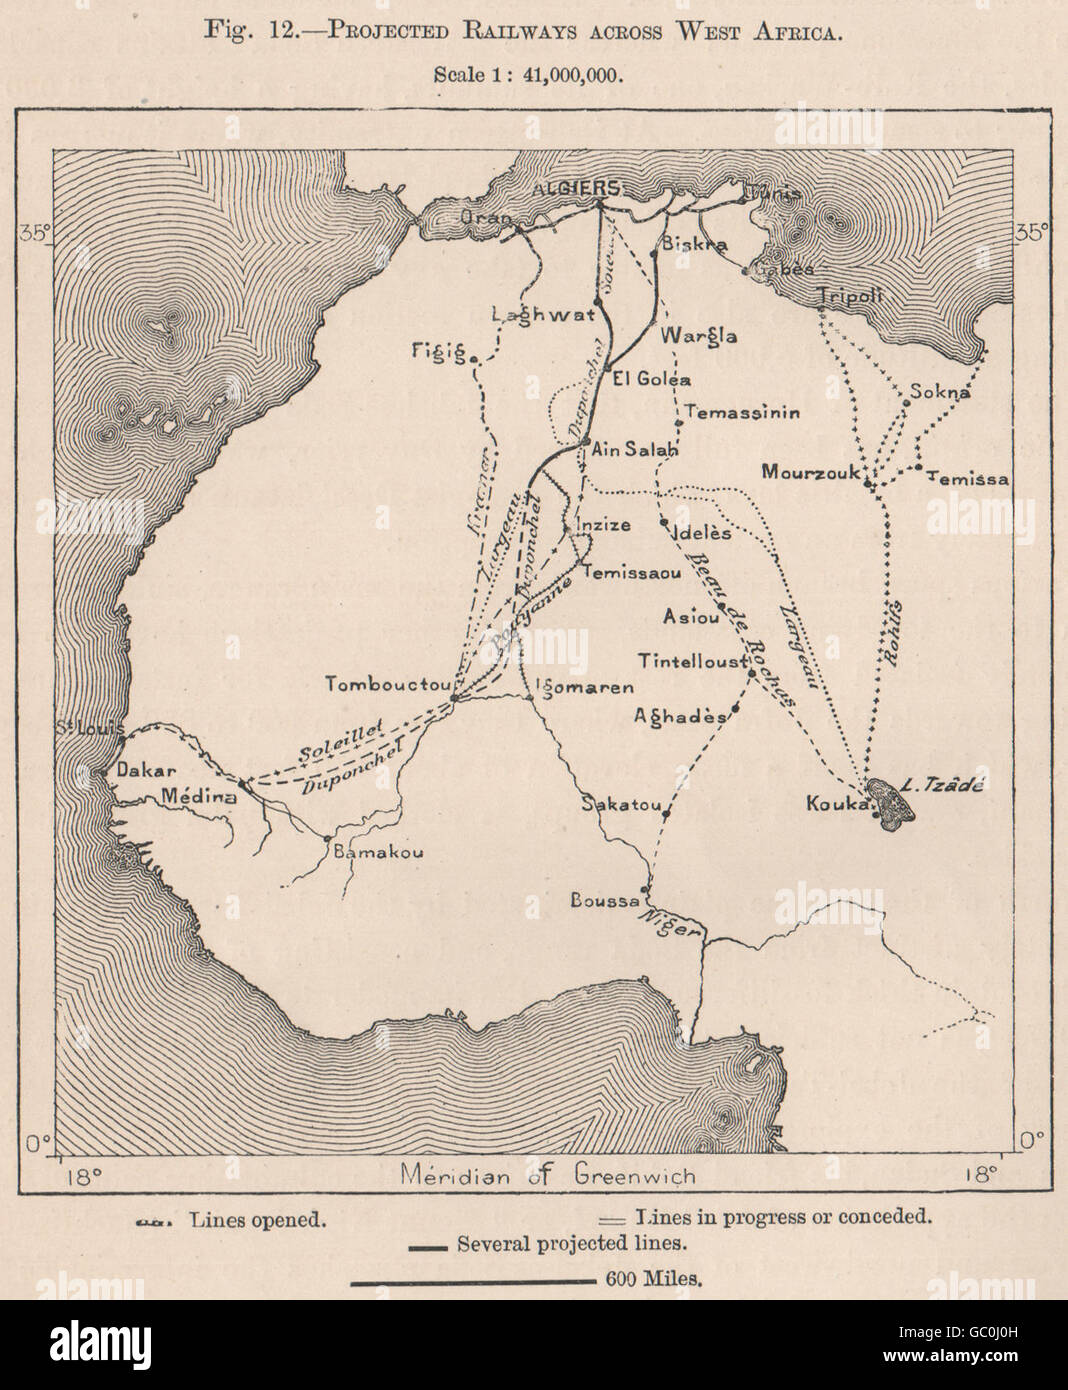 Chemins de fer projetée à travers l'Afrique de l'Ouest, 1885 carte antique Banque D'Images